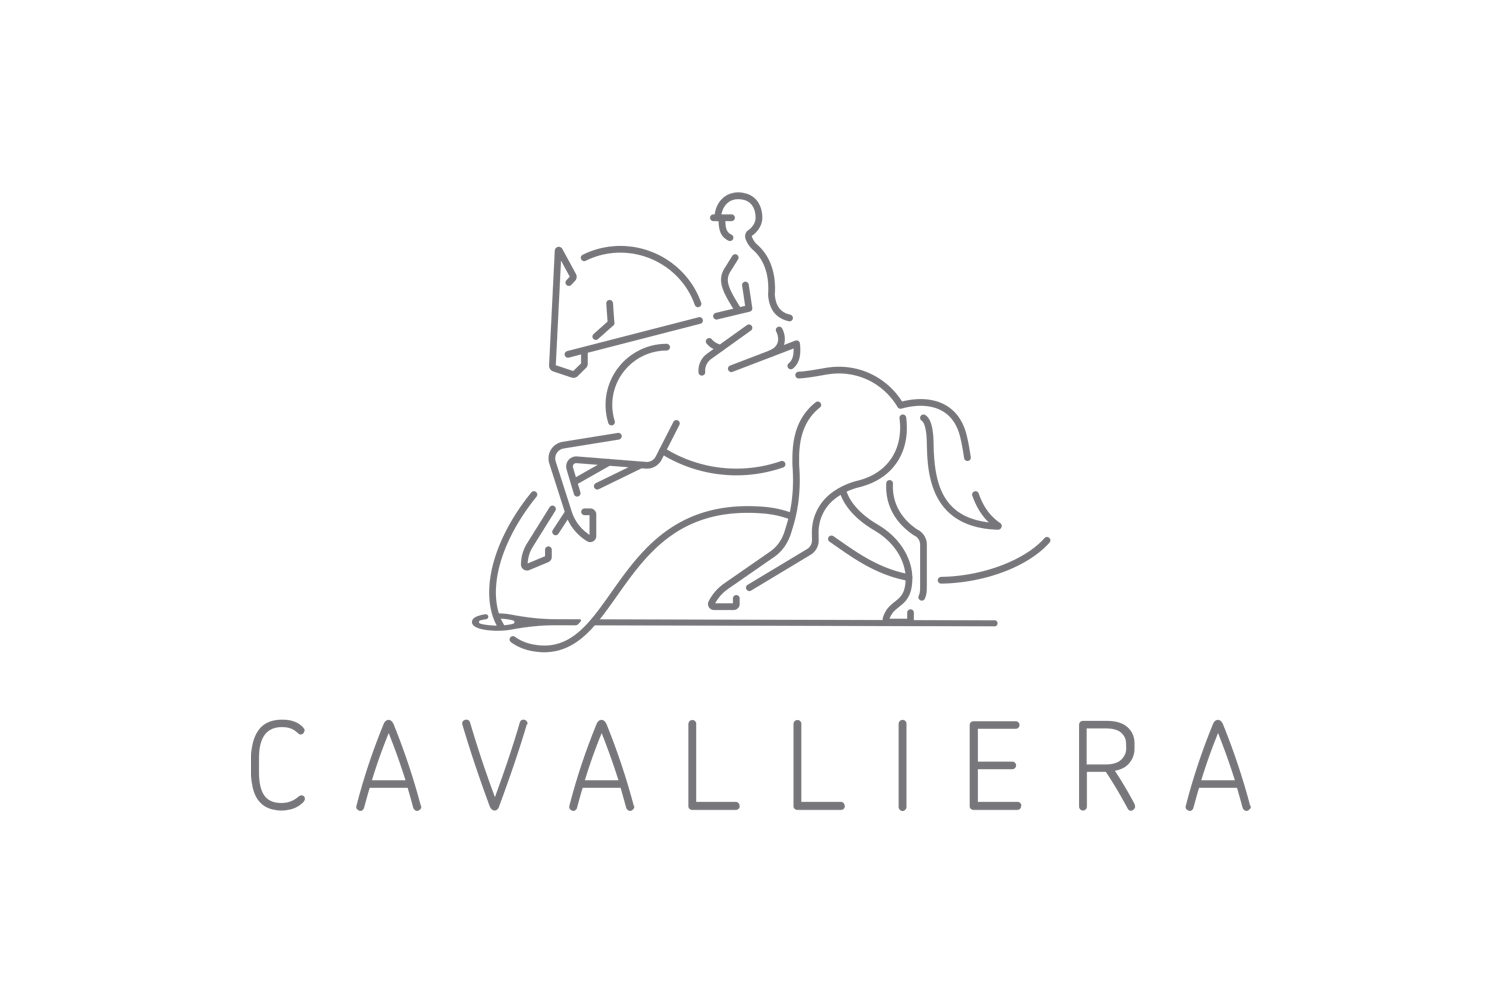 (c) Cavalliera.com